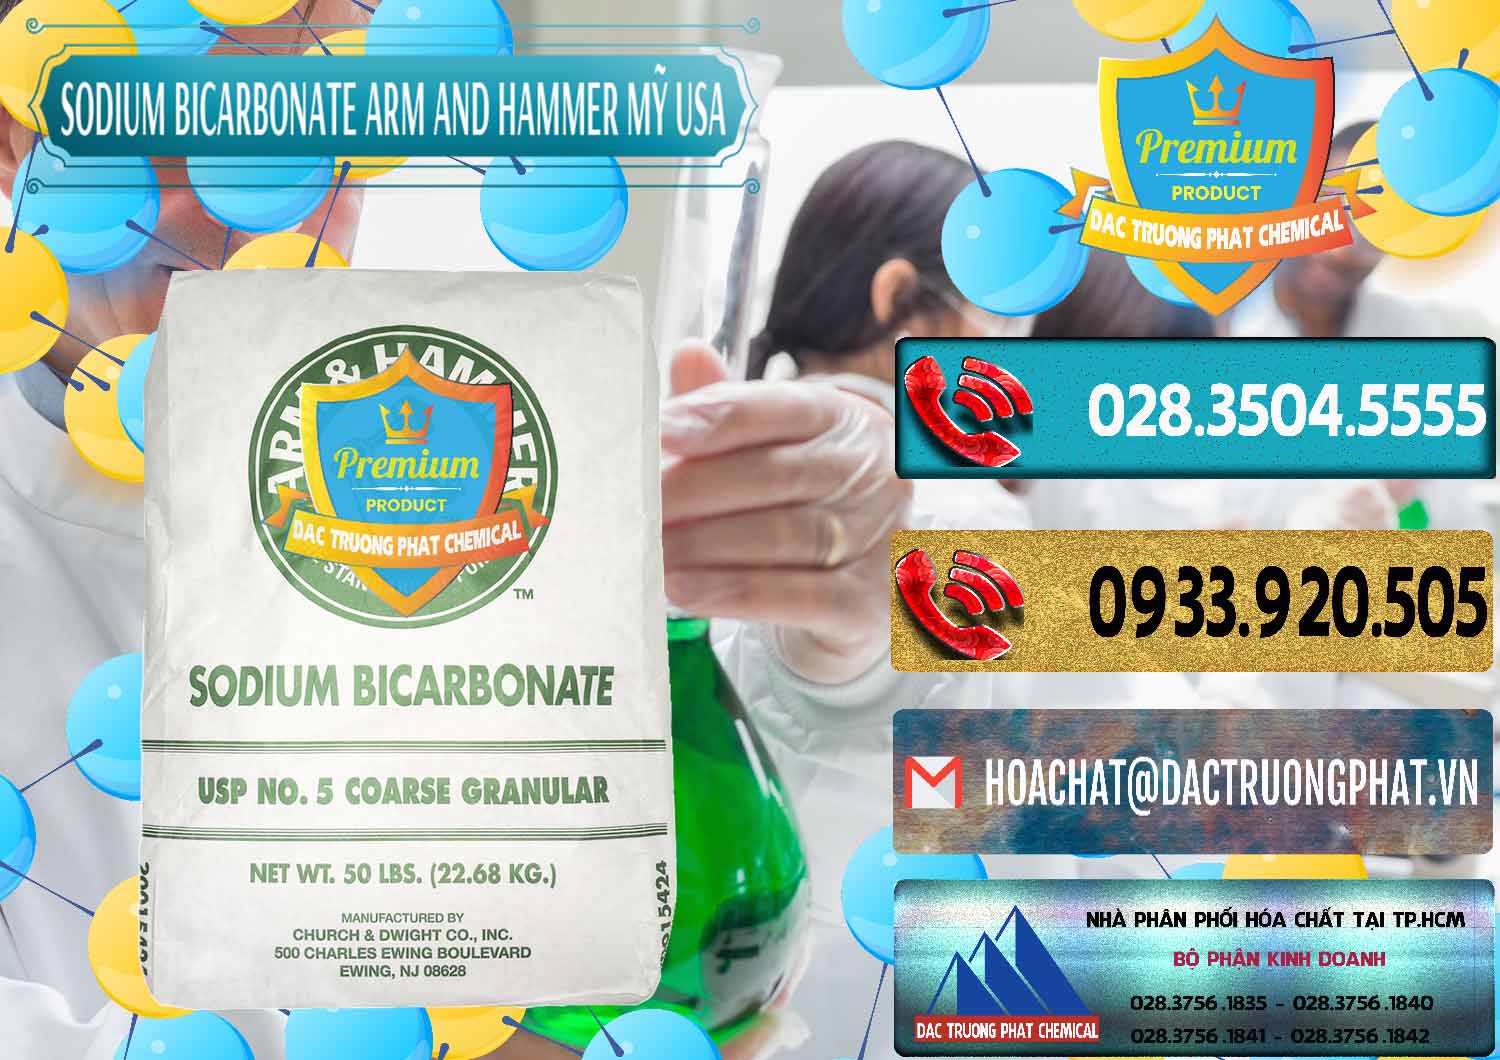 Chuyên phân phối & bán Sodium Bicarbonate – Bicar NaHCO3 Food Grade Arm And Hammer Mỹ USA - 0255 - Nơi chuyên phân phối - kinh doanh hóa chất tại TP.HCM - hoachatdetnhuom.com